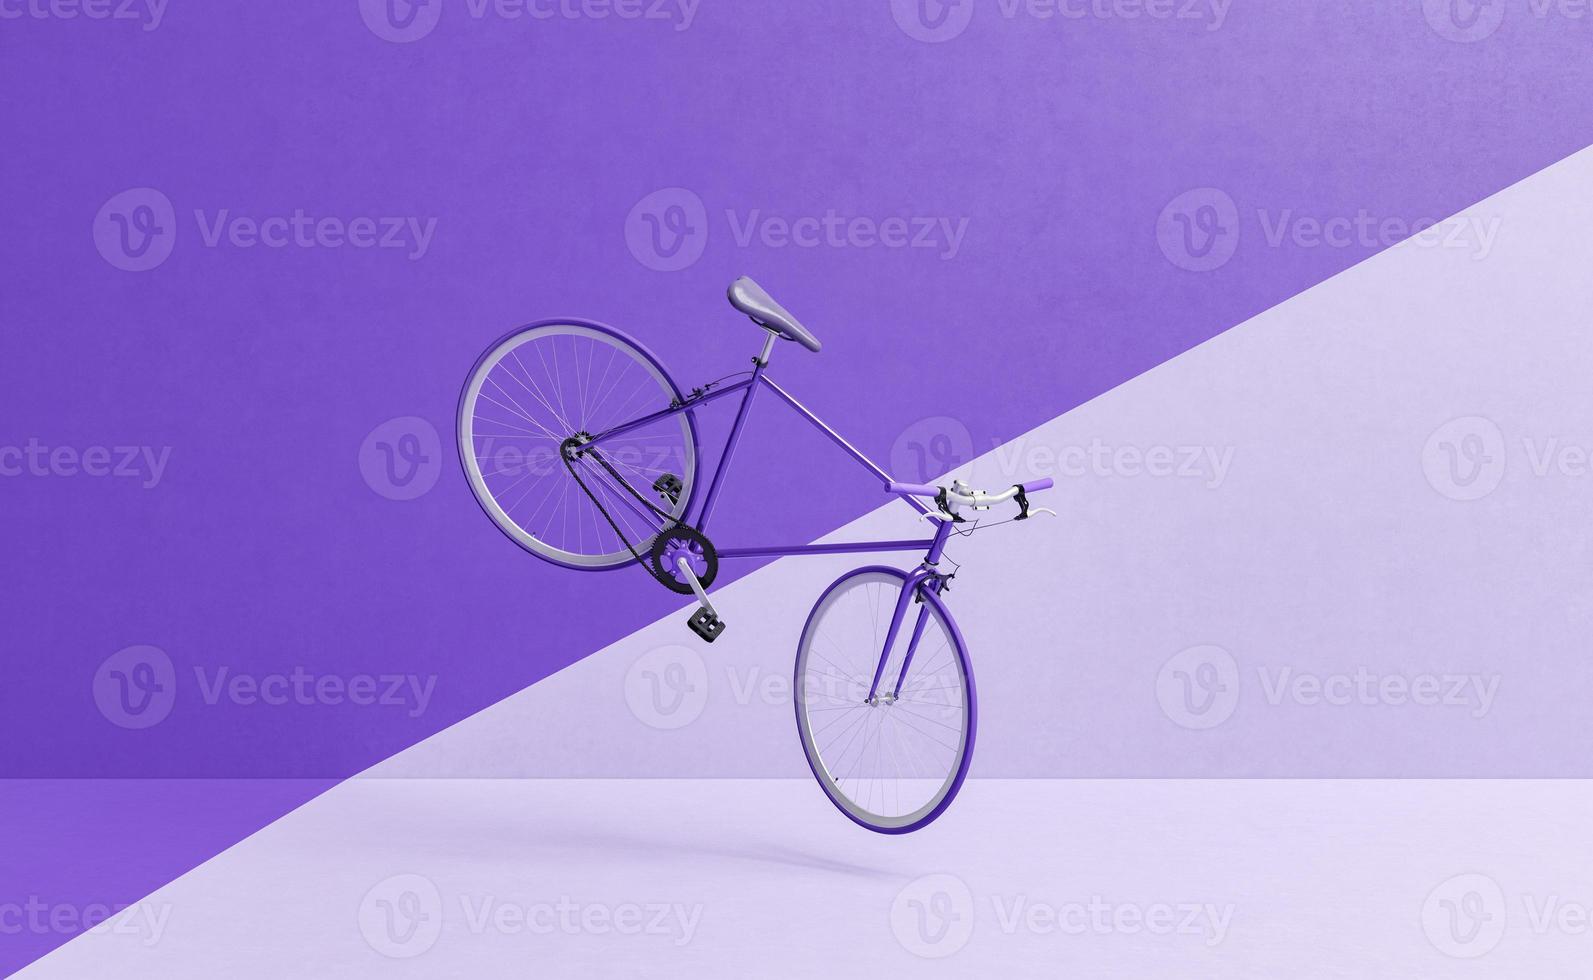 Bicicleta retro volando con pared dividida en dos colores. foto